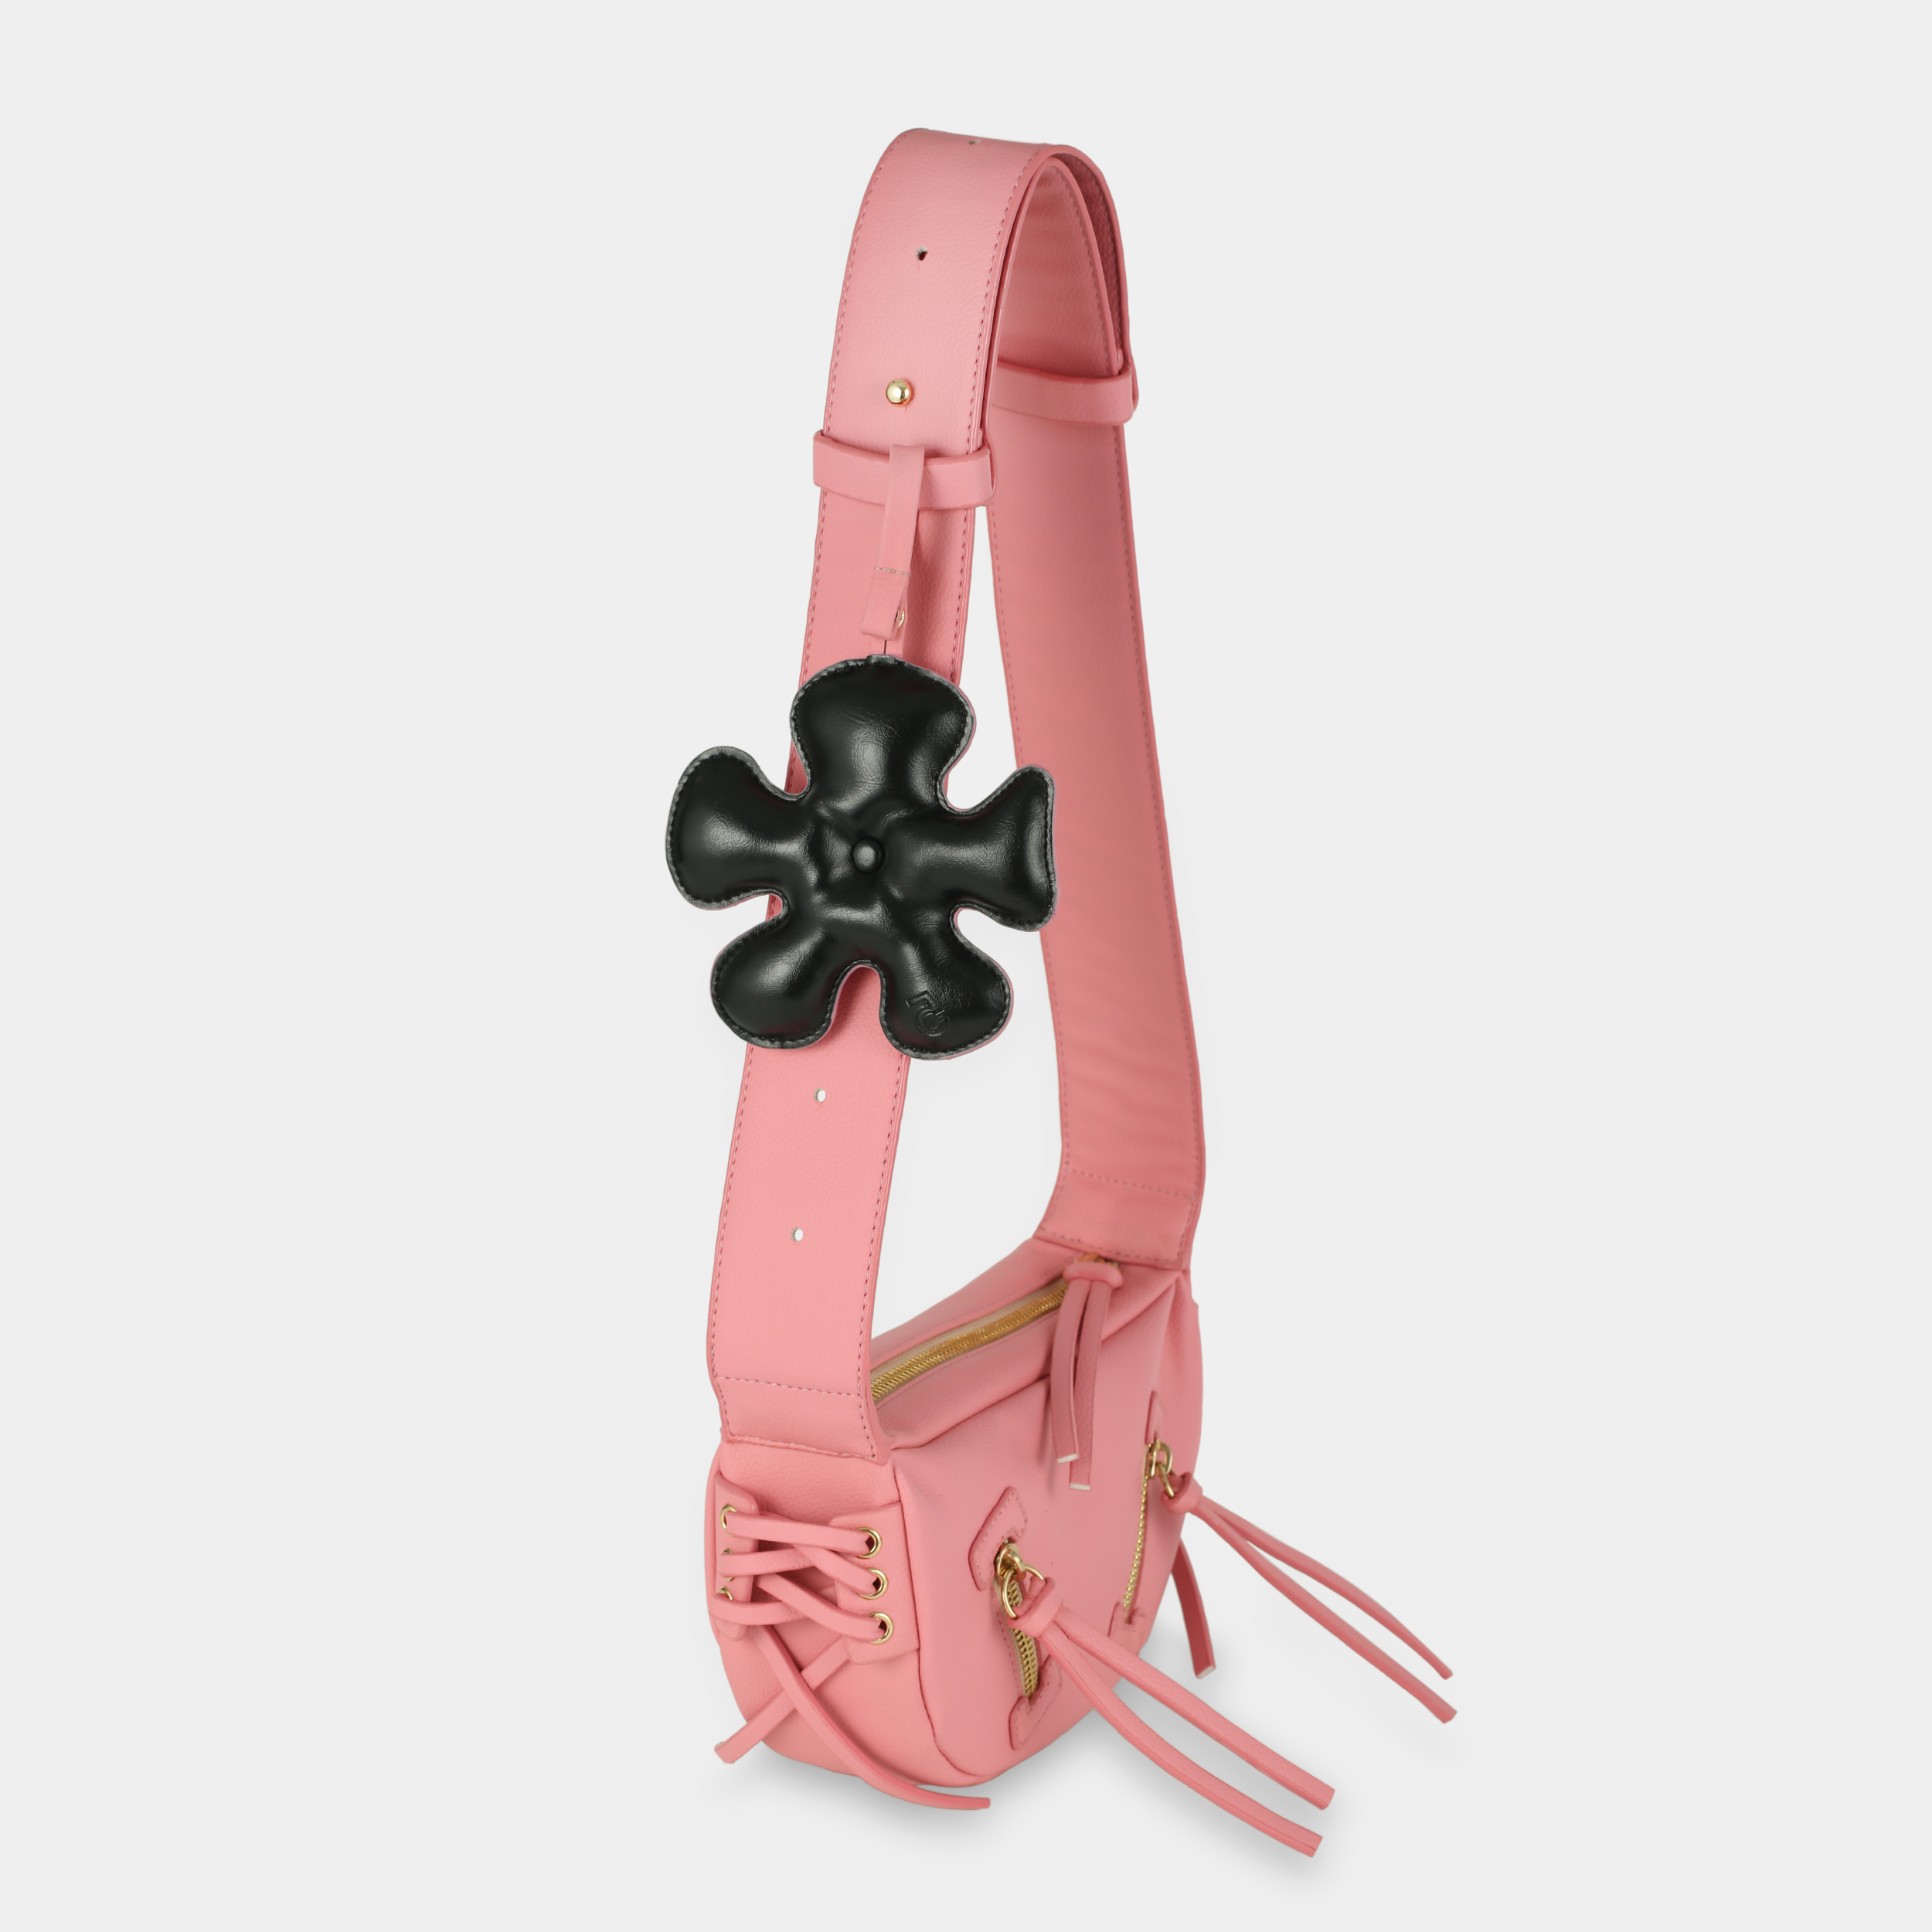 Túi xách LACE size nhỏ (S) màu hồng pastel